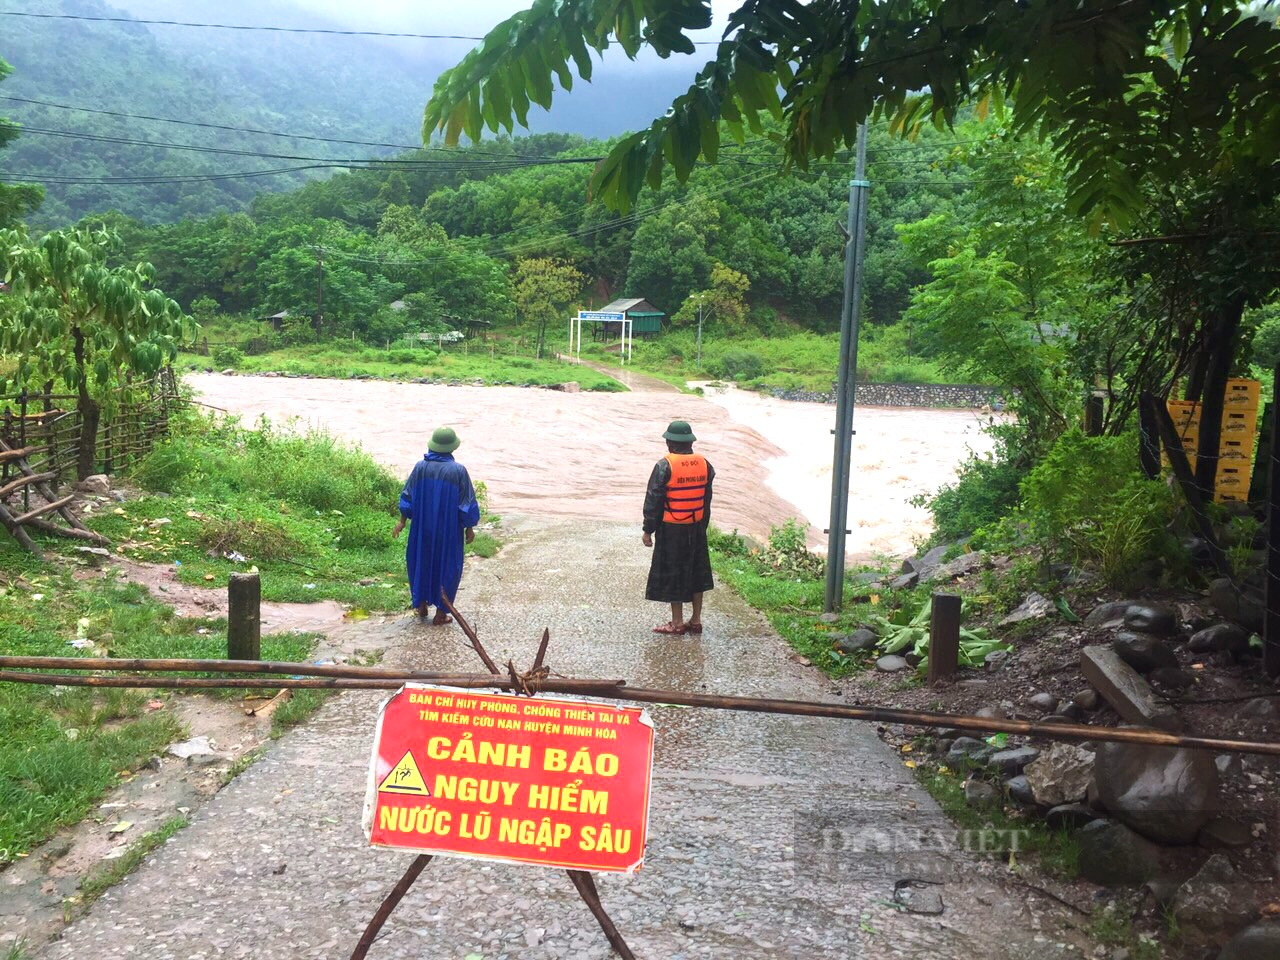 Ảnh hưởng bão số 4, Quảng Bình mưa to, nhiều nơi bị chia cắt - Ảnh 1.